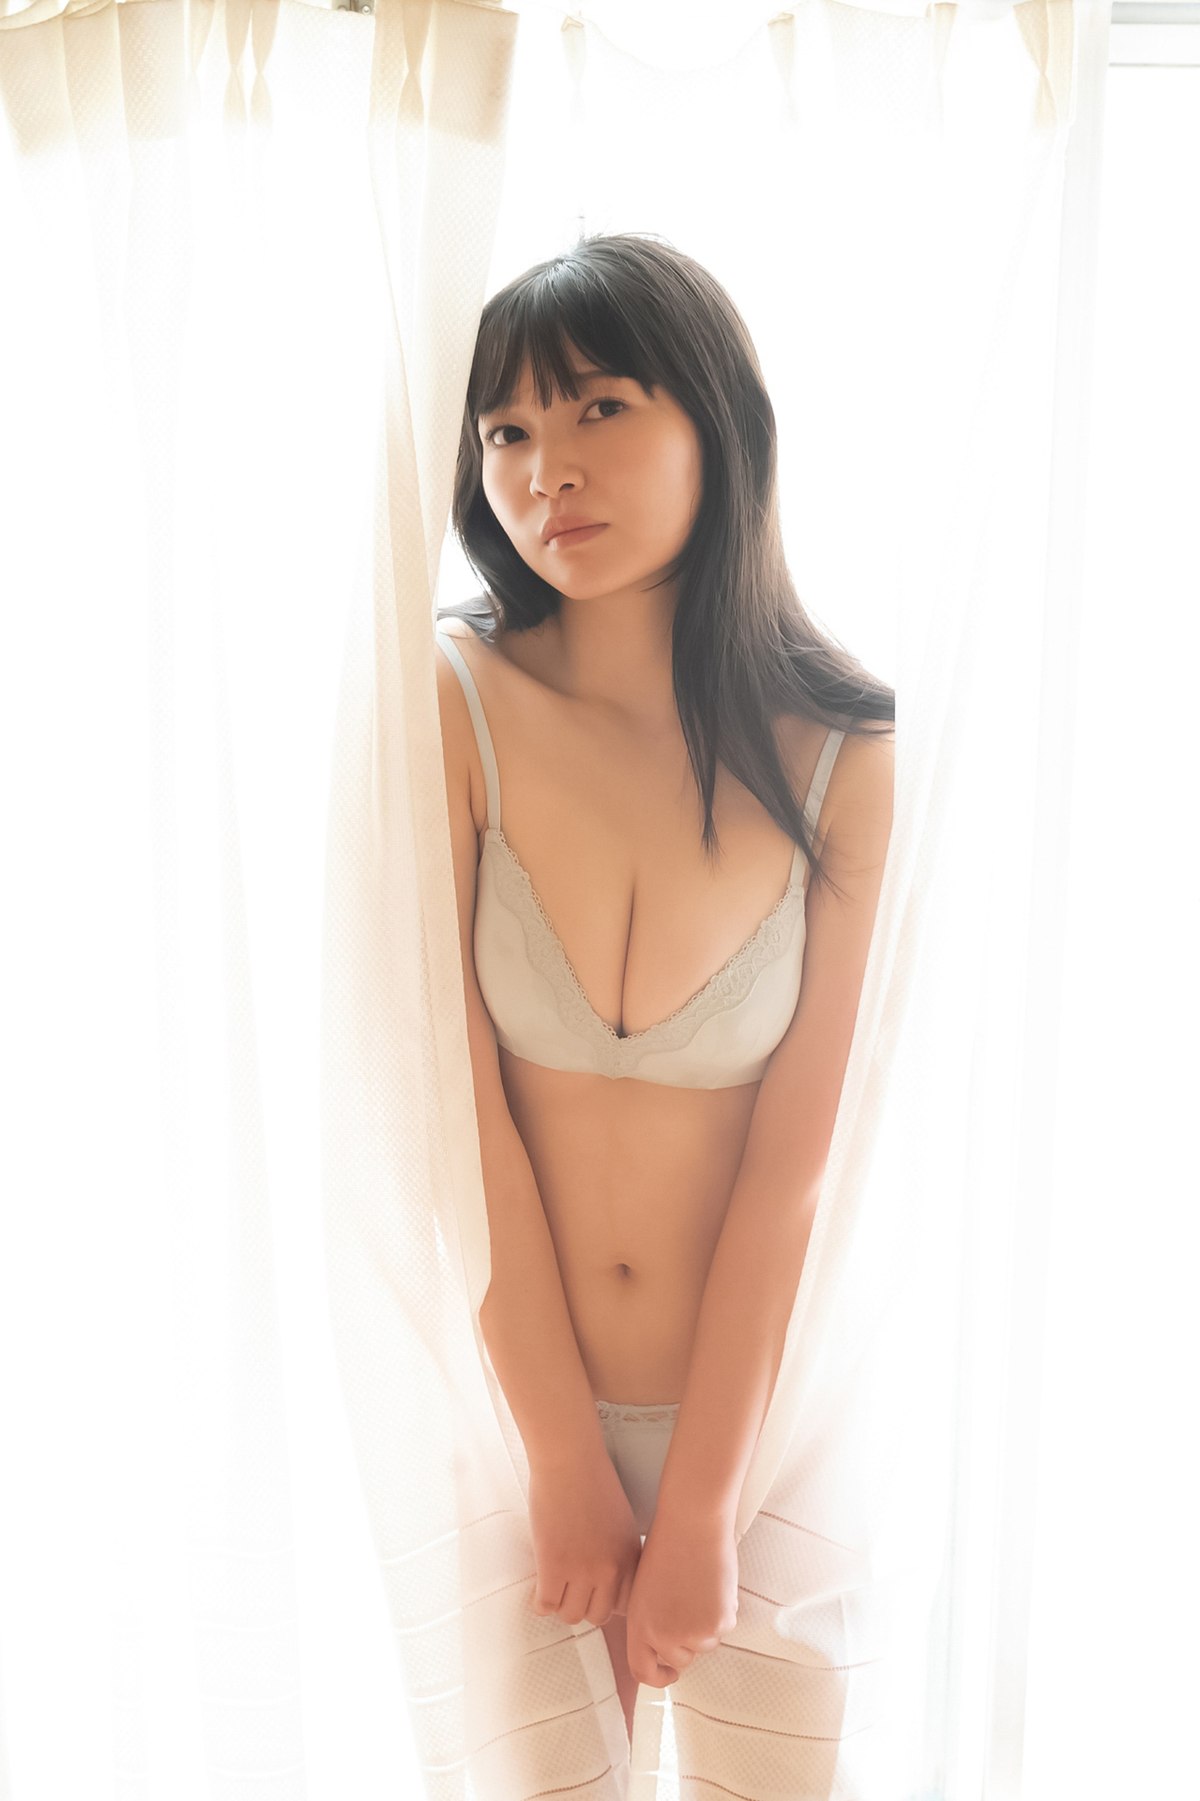 Weekly Gendai Photobook 2023 07 09 Suzuka Sayama 佐山すずか Body Wet In The Shower 0067 4323346588.jpg